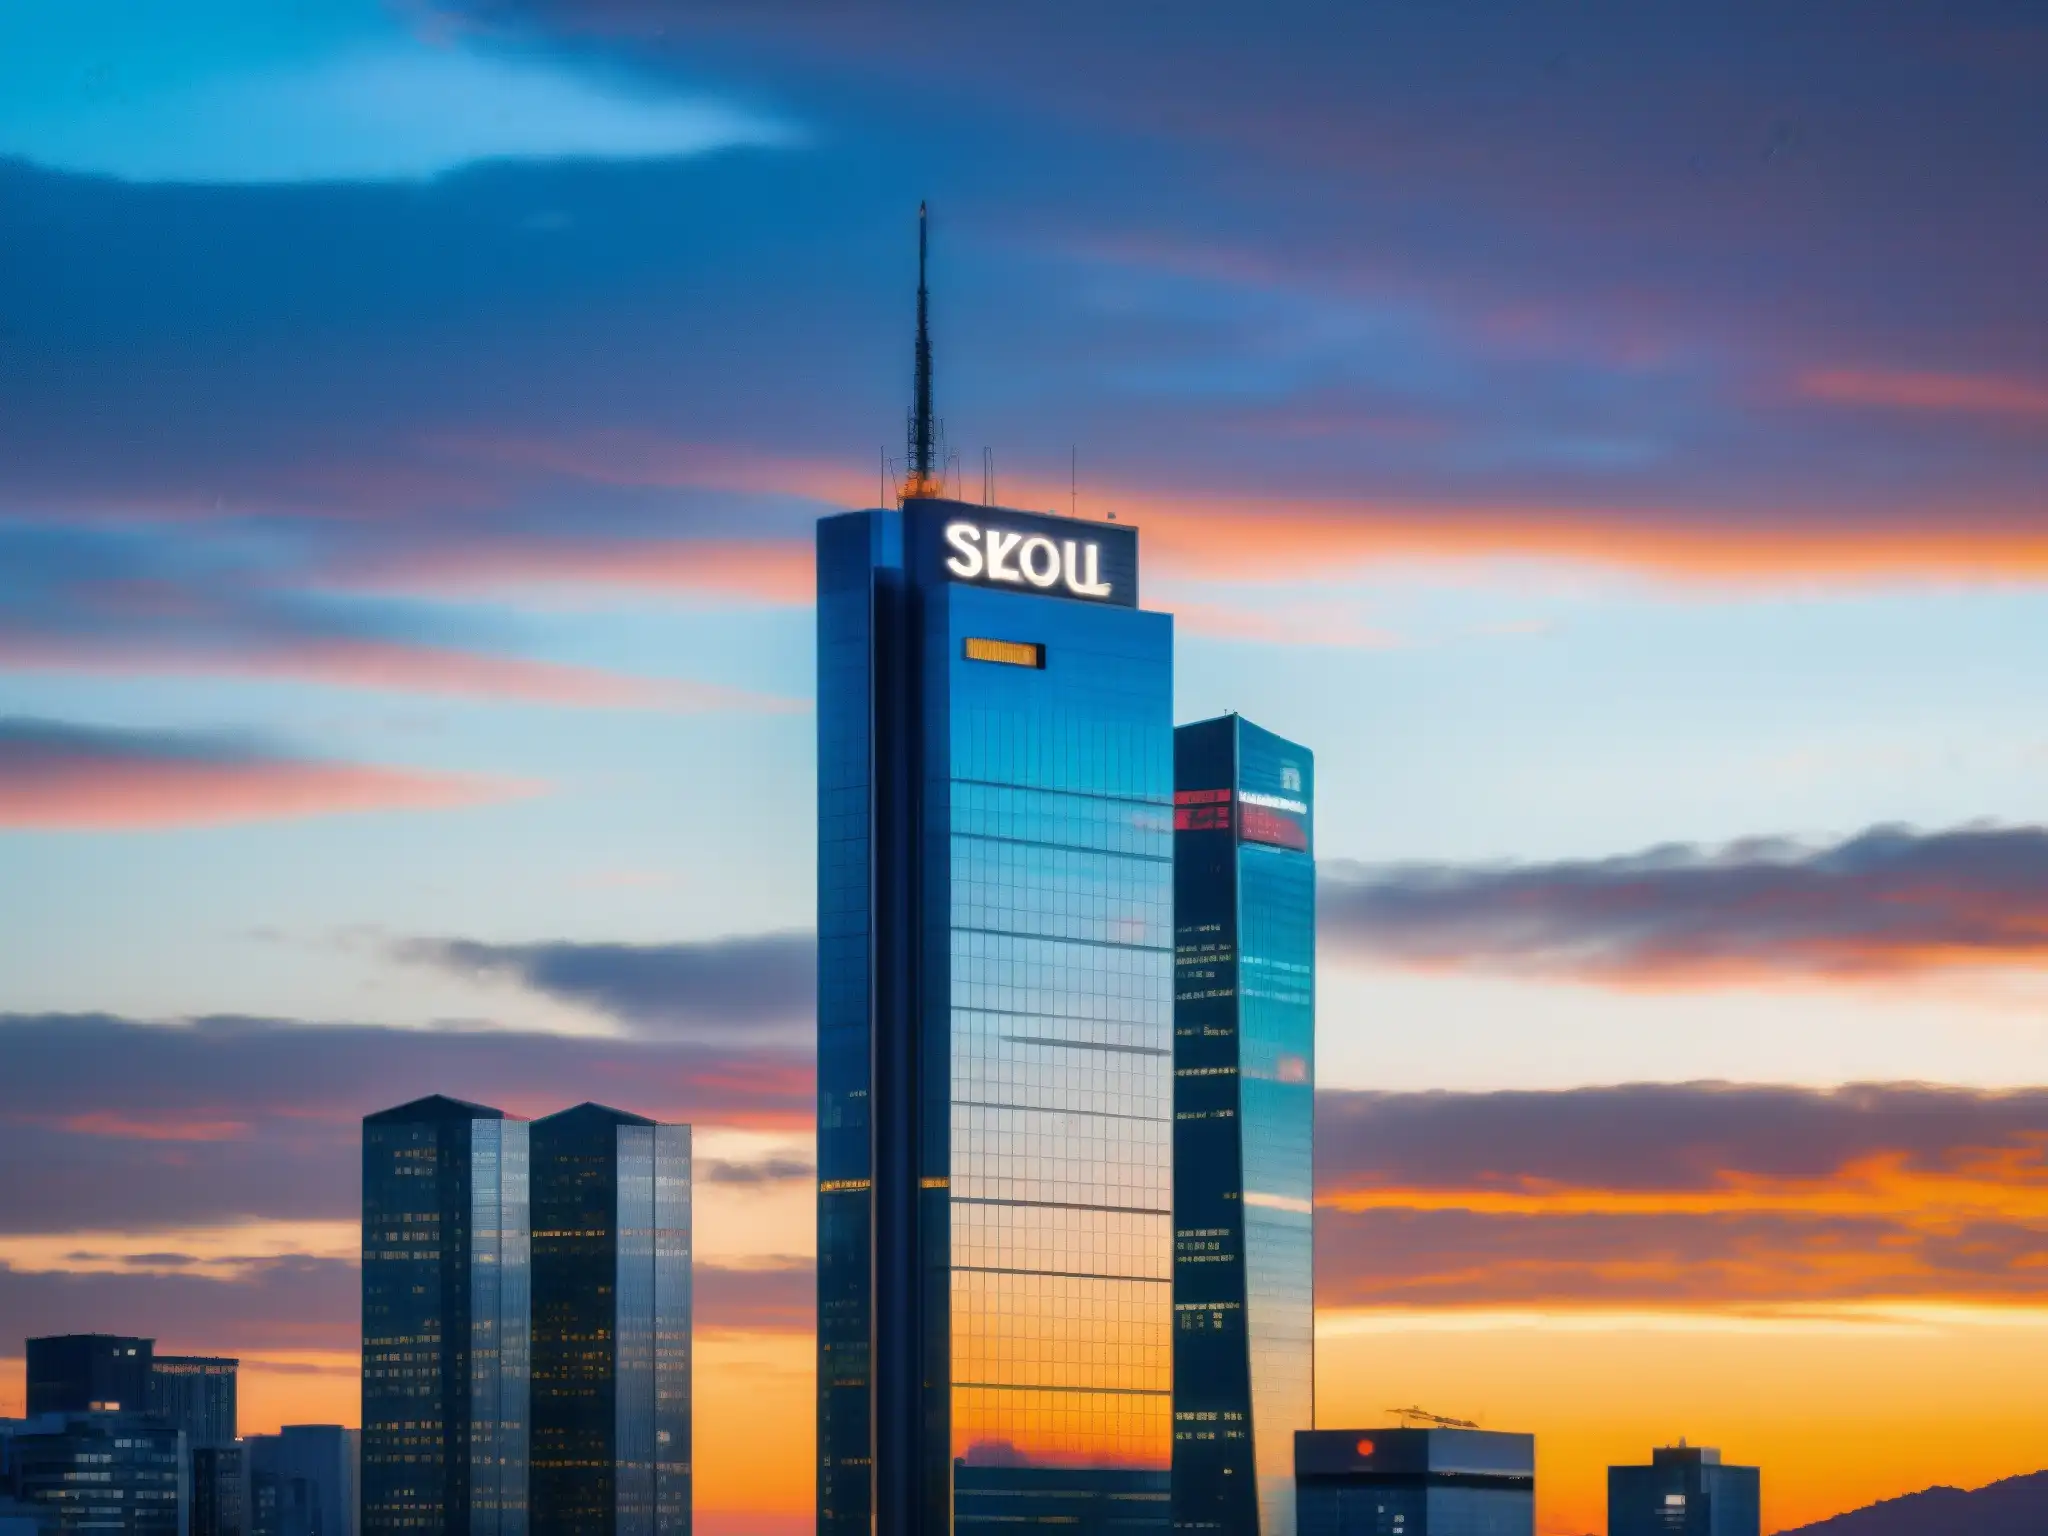 Un imponente rascacielos moderno en Seúl, Corea del Sur, refleja el vibrante atardecer en su fachada de cristal